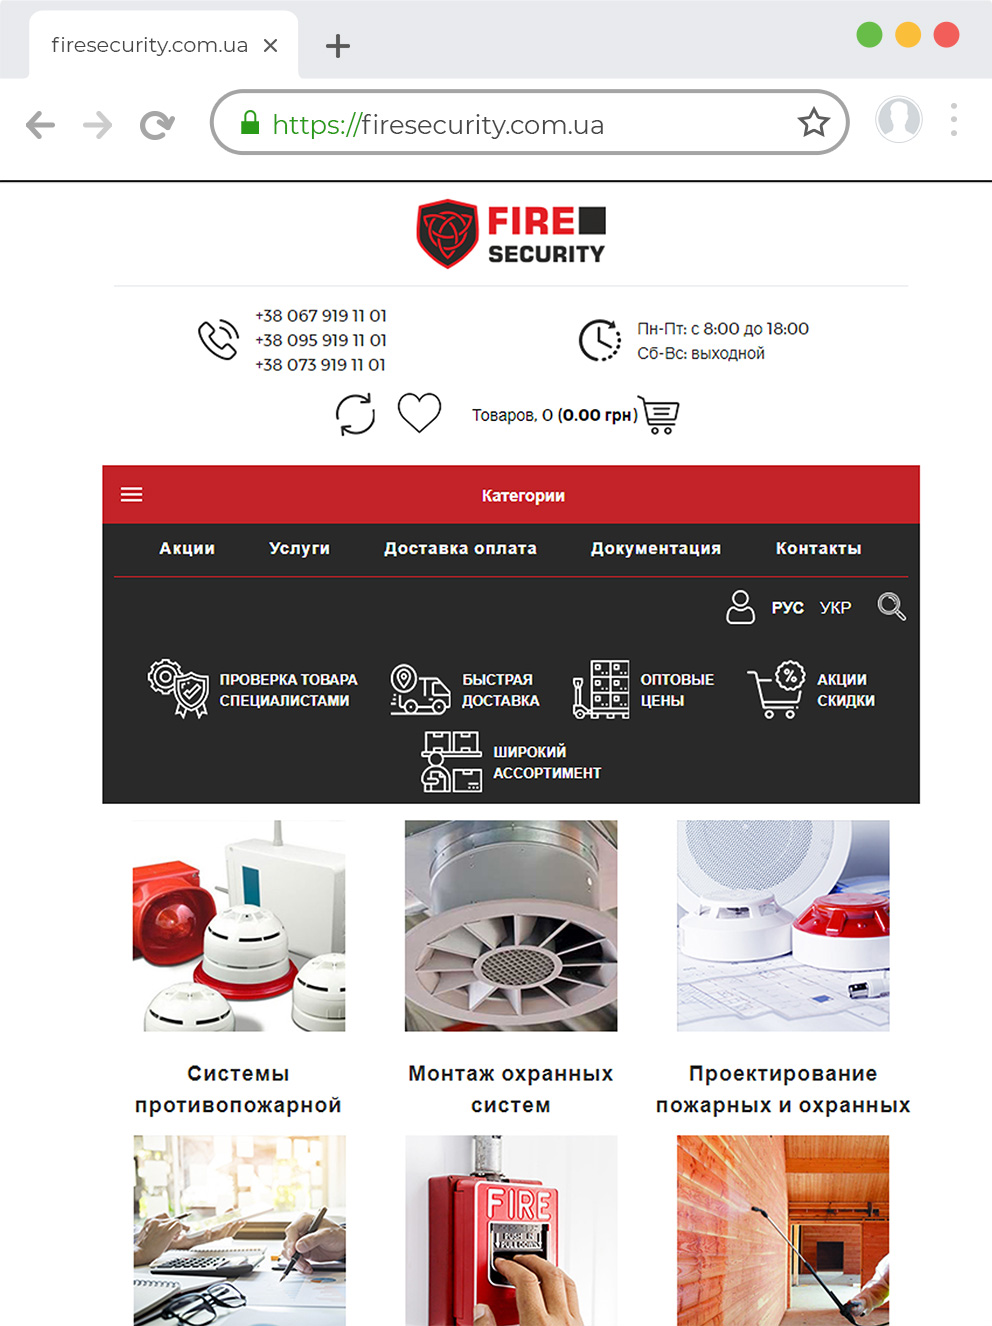 Разработка сайта по противопожарной сигнализации